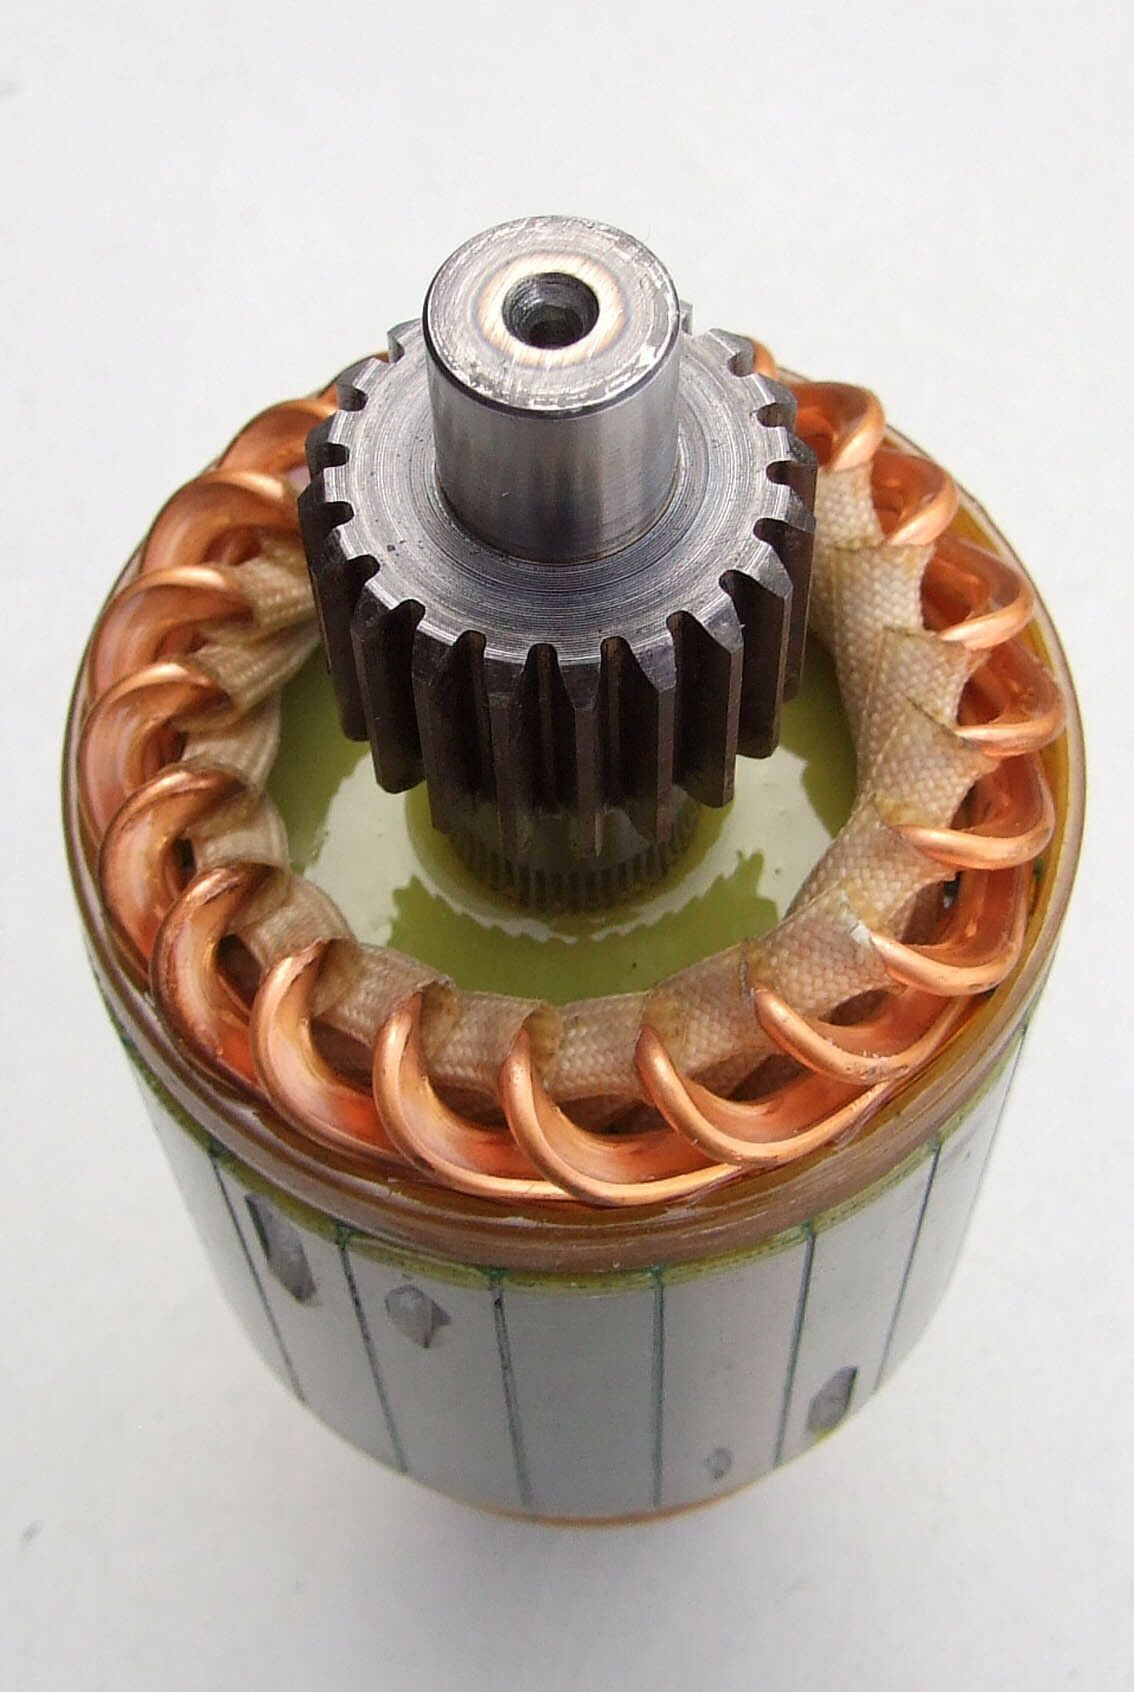 Rotor elektropokretaca delco 24v mercedes actros 6,2 kw